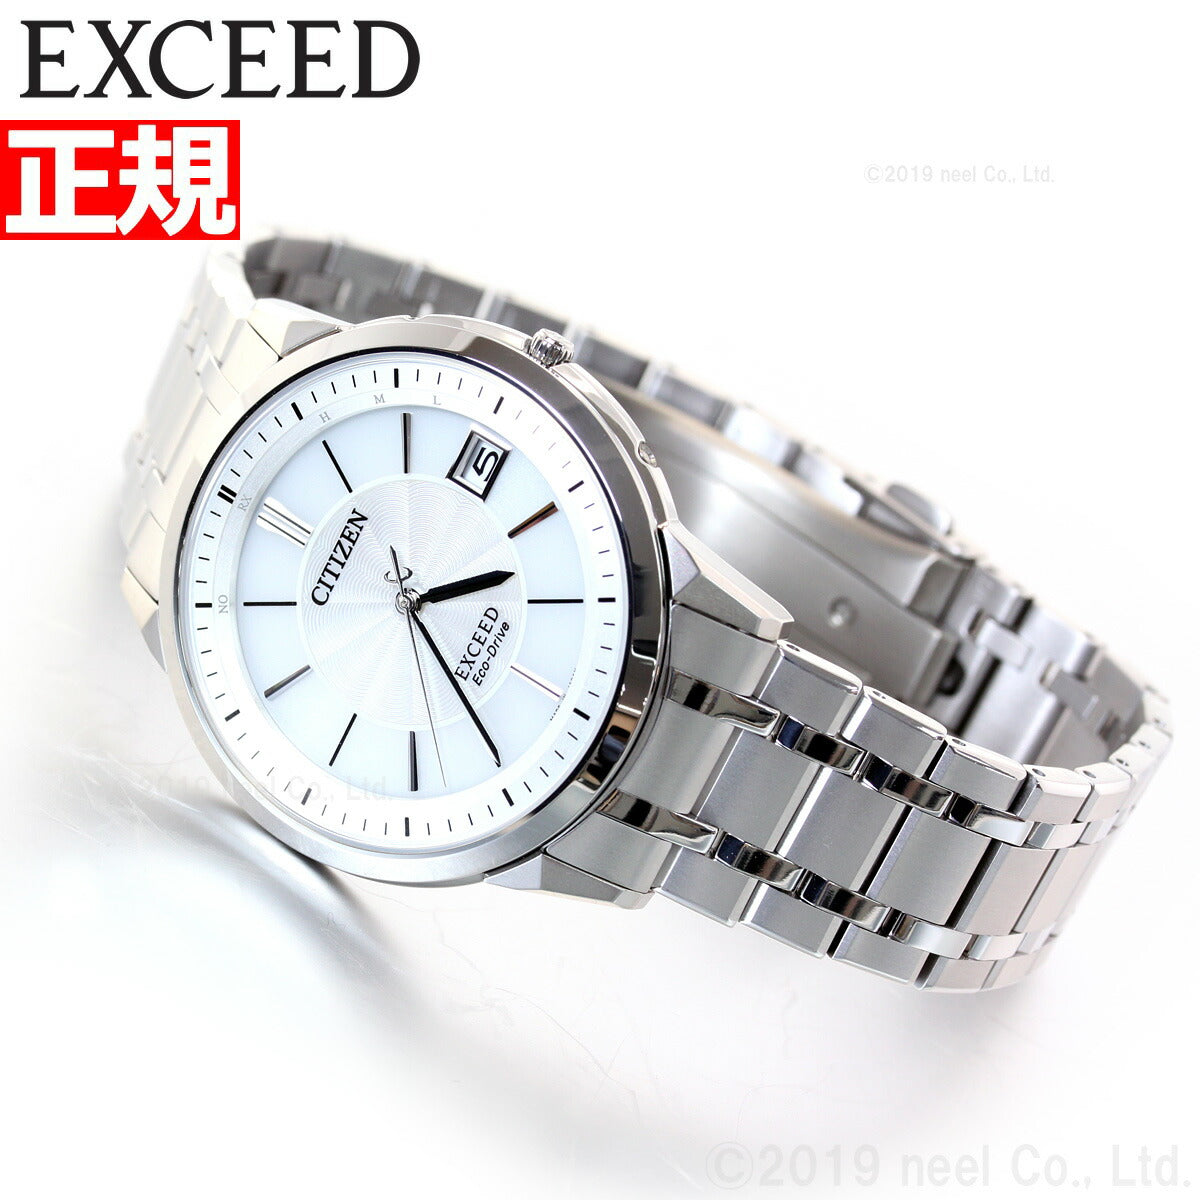 シチズン エクシード 腕時計 エコ ドライブ チタン製 世界最薄 電波時計 メンズ CITIZEN EXCEED EBG74-5023【正規品】【送料無料】